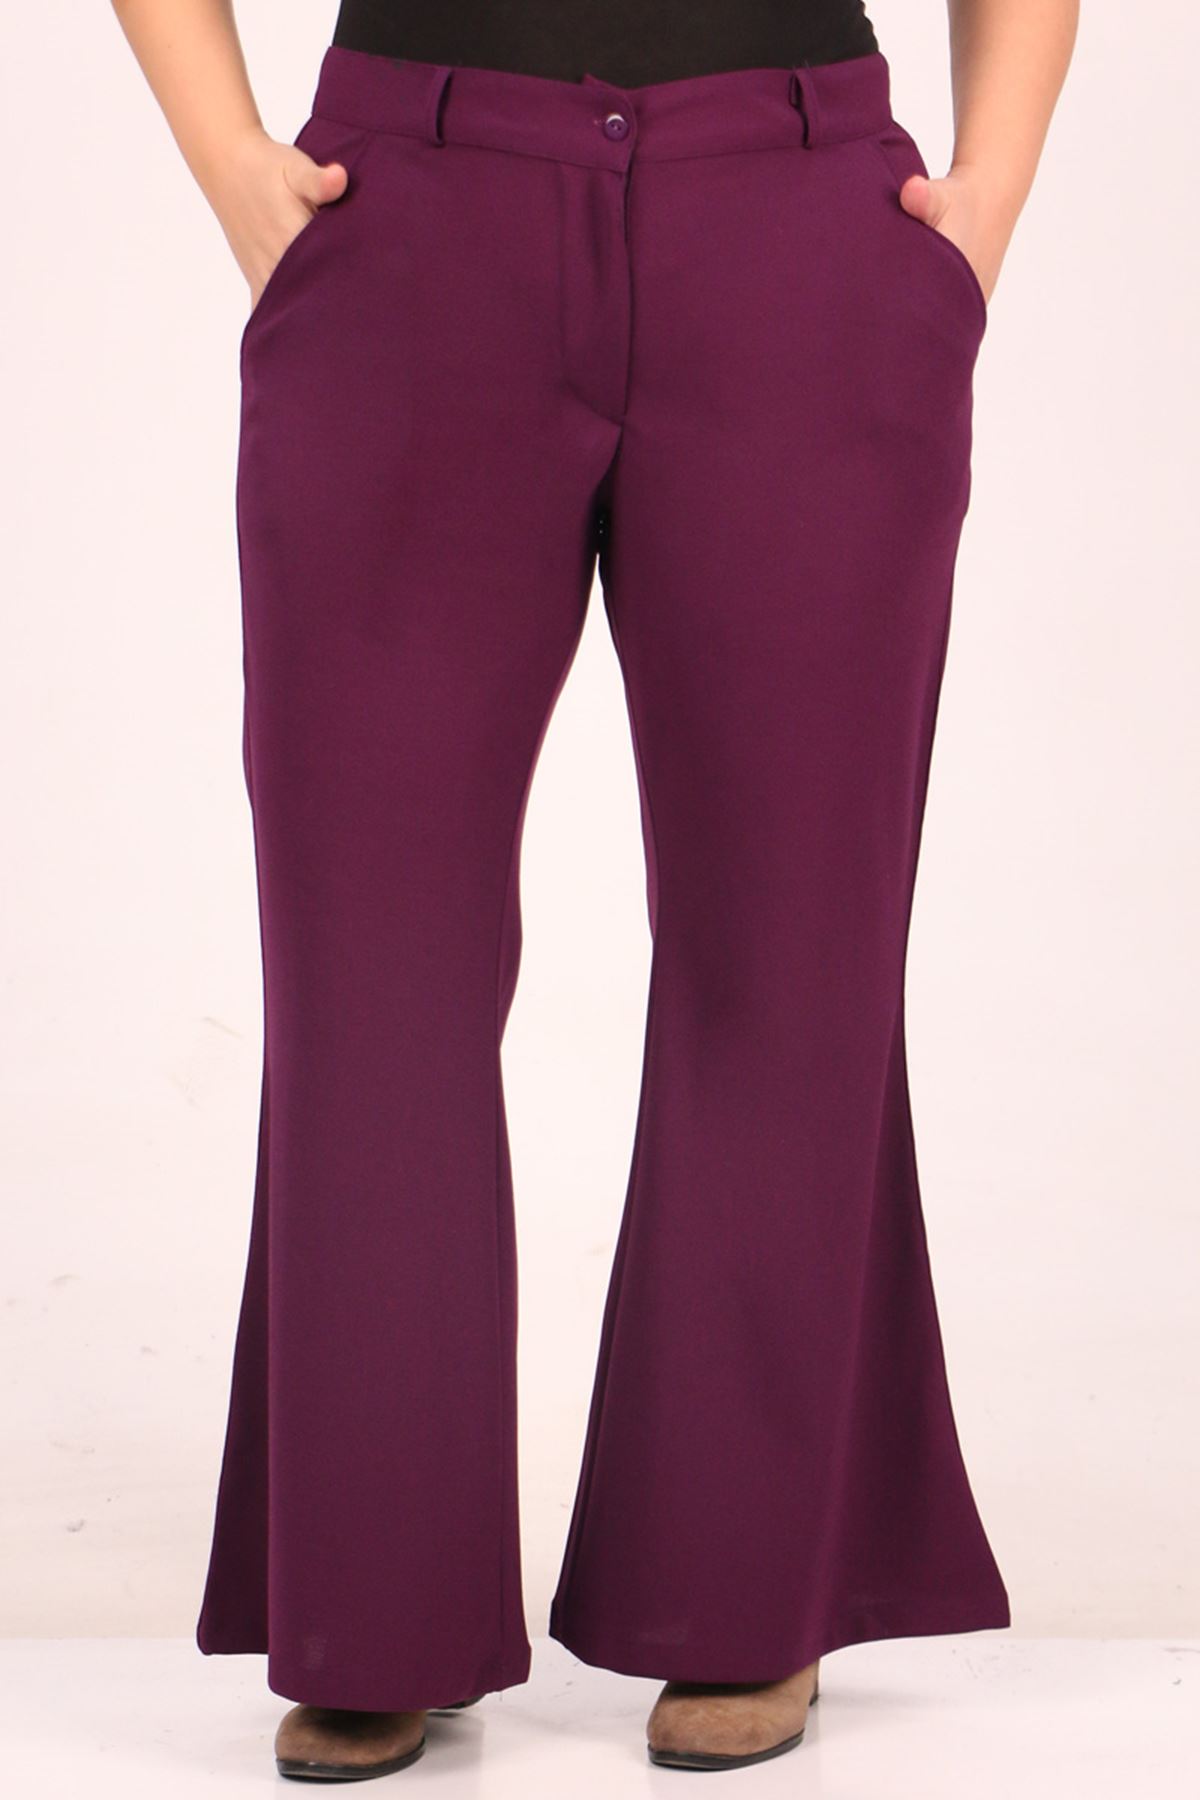 39048 Plus Size Scuba Flare Trousers-Purple